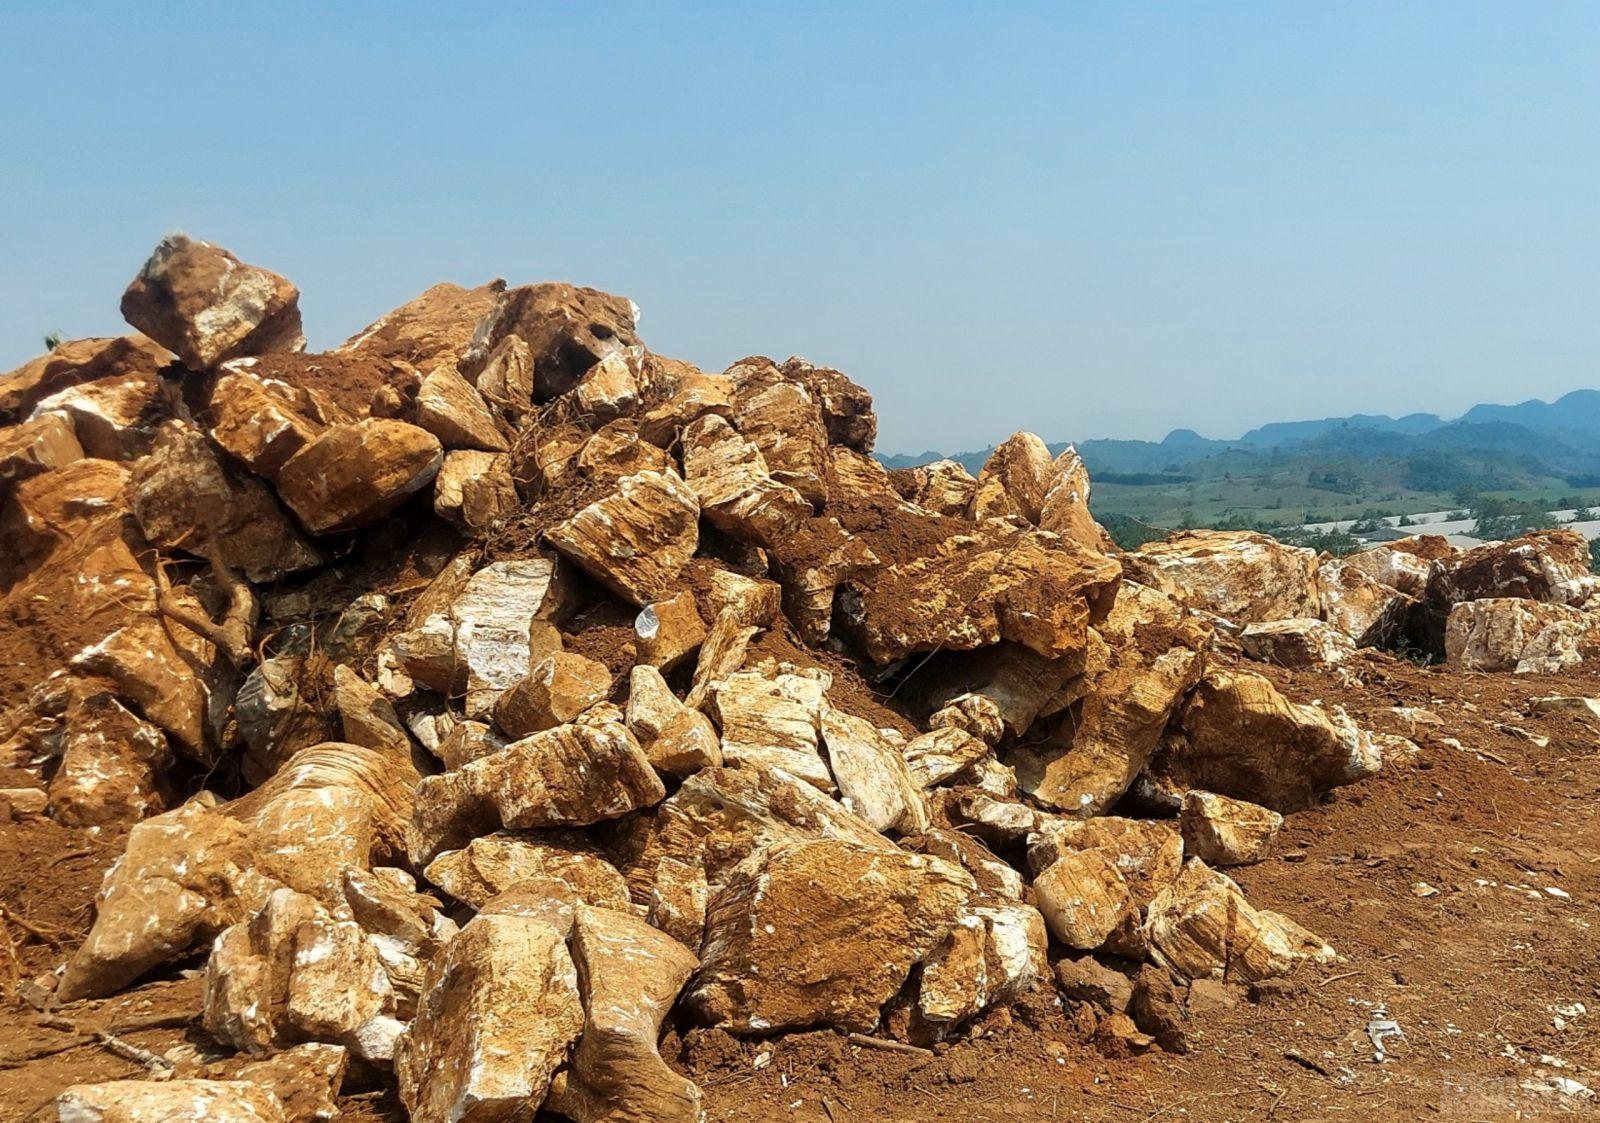 Khi được thông tin về tình hình khai thác khoáng sản trái phép trên địa bàn, lãnh đạo chính quyền xã Hạ Sơn tỏ vẻ bất ngờ về hiện tượng này xảy ra ngay chính trên địa bàn mình quản lý